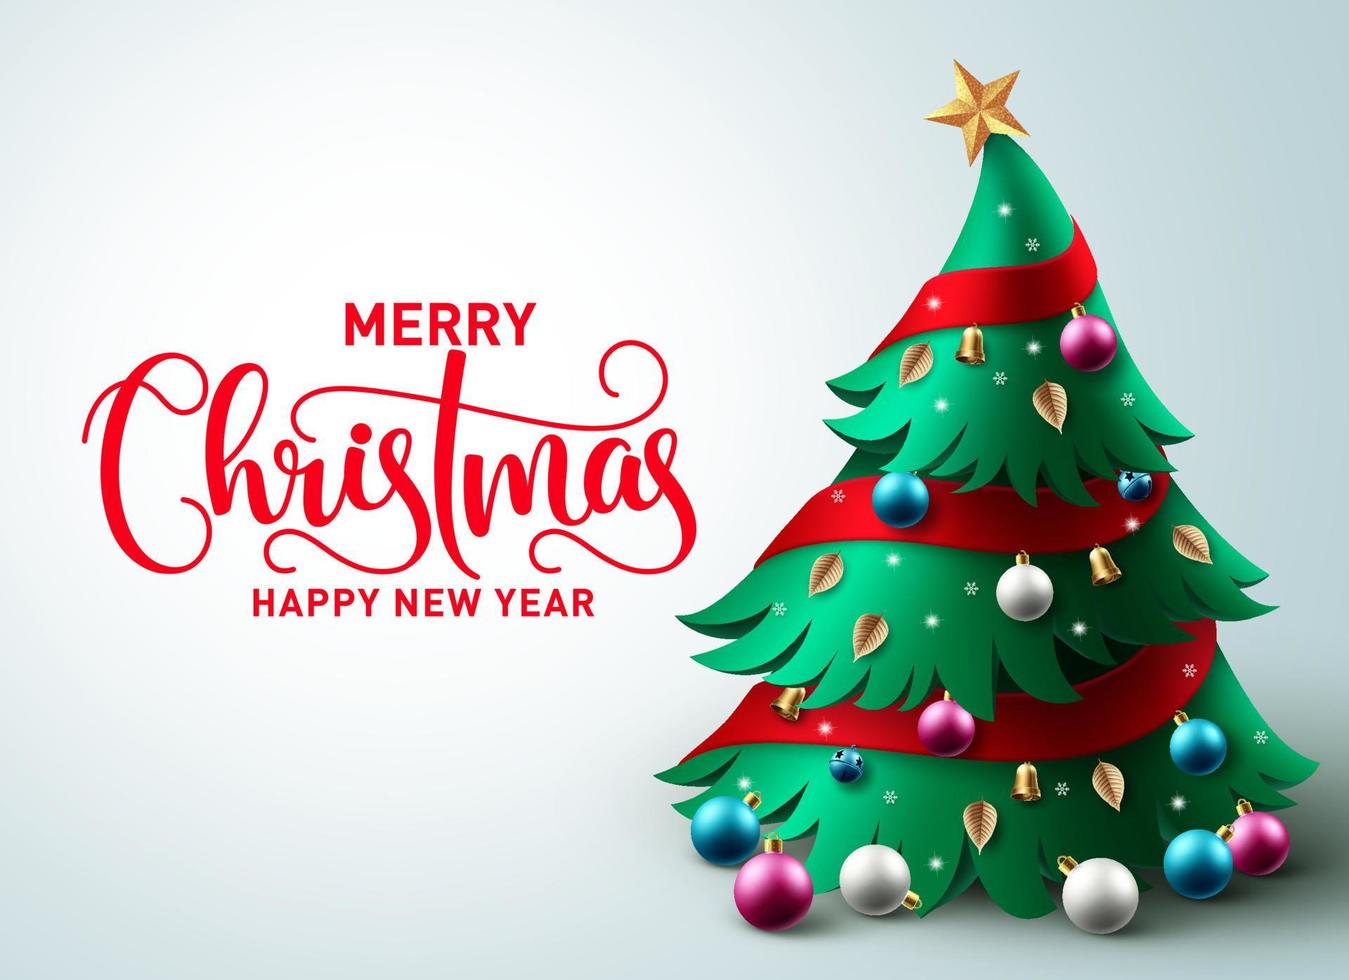 Diseño de fondo de vector de árbol de Navidad. Texto de saludo de feliz Navidad en el espacio vacío con elemento de árbol de pino y adornos coloridos para la decoración de tarjetas de temporada navideña. ilustración vectorial.